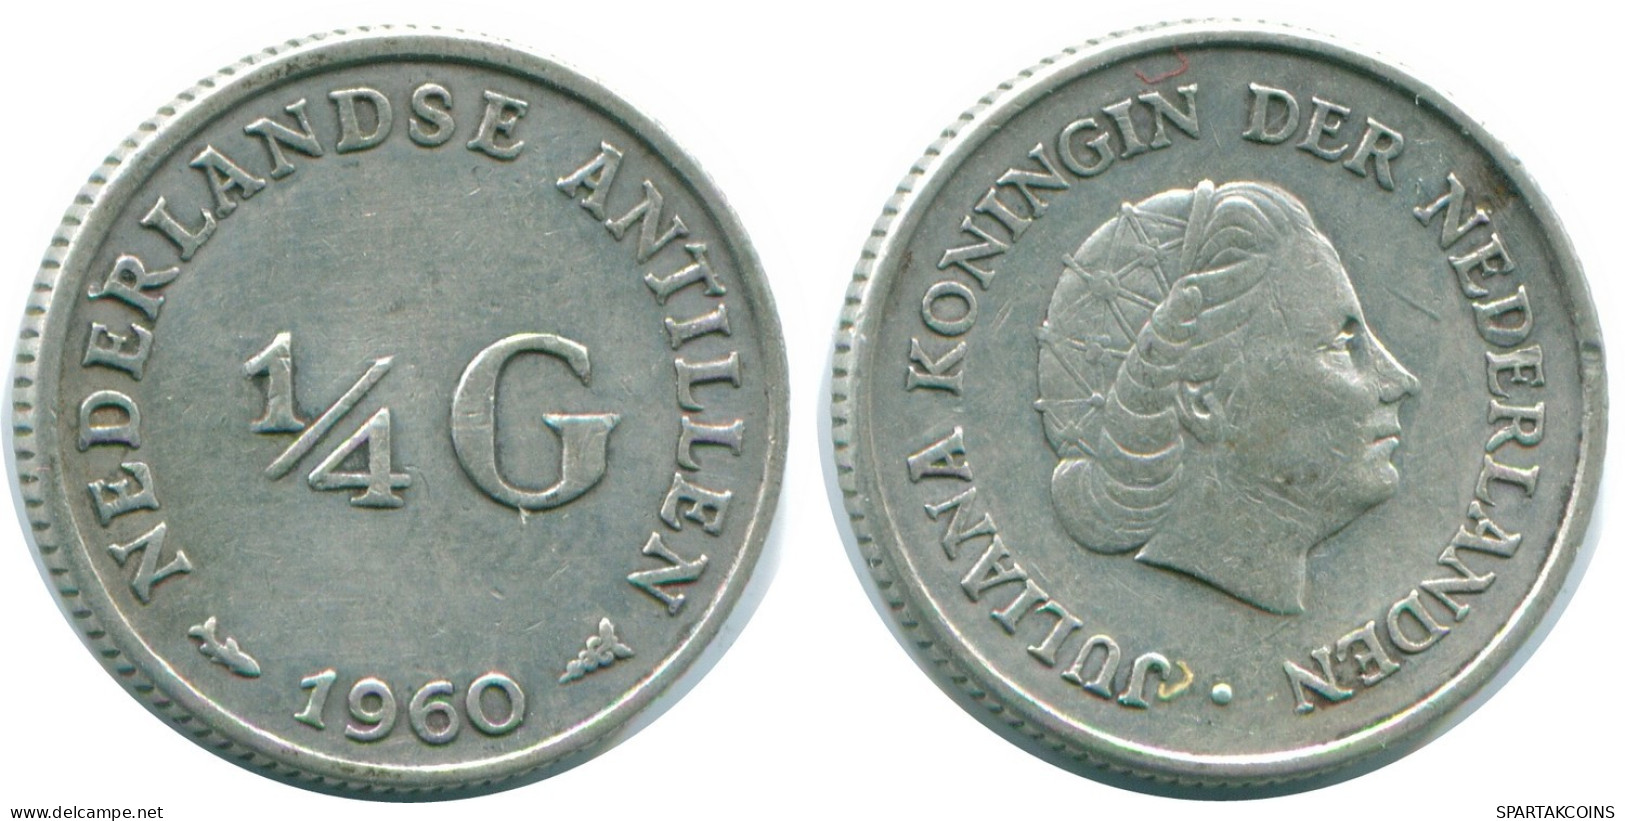 1/4 GULDEN 1960 NIEDERLÄNDISCHE ANTILLEN SILBER Koloniale Münze #NL11054.4.D.A - Antille Olandesi